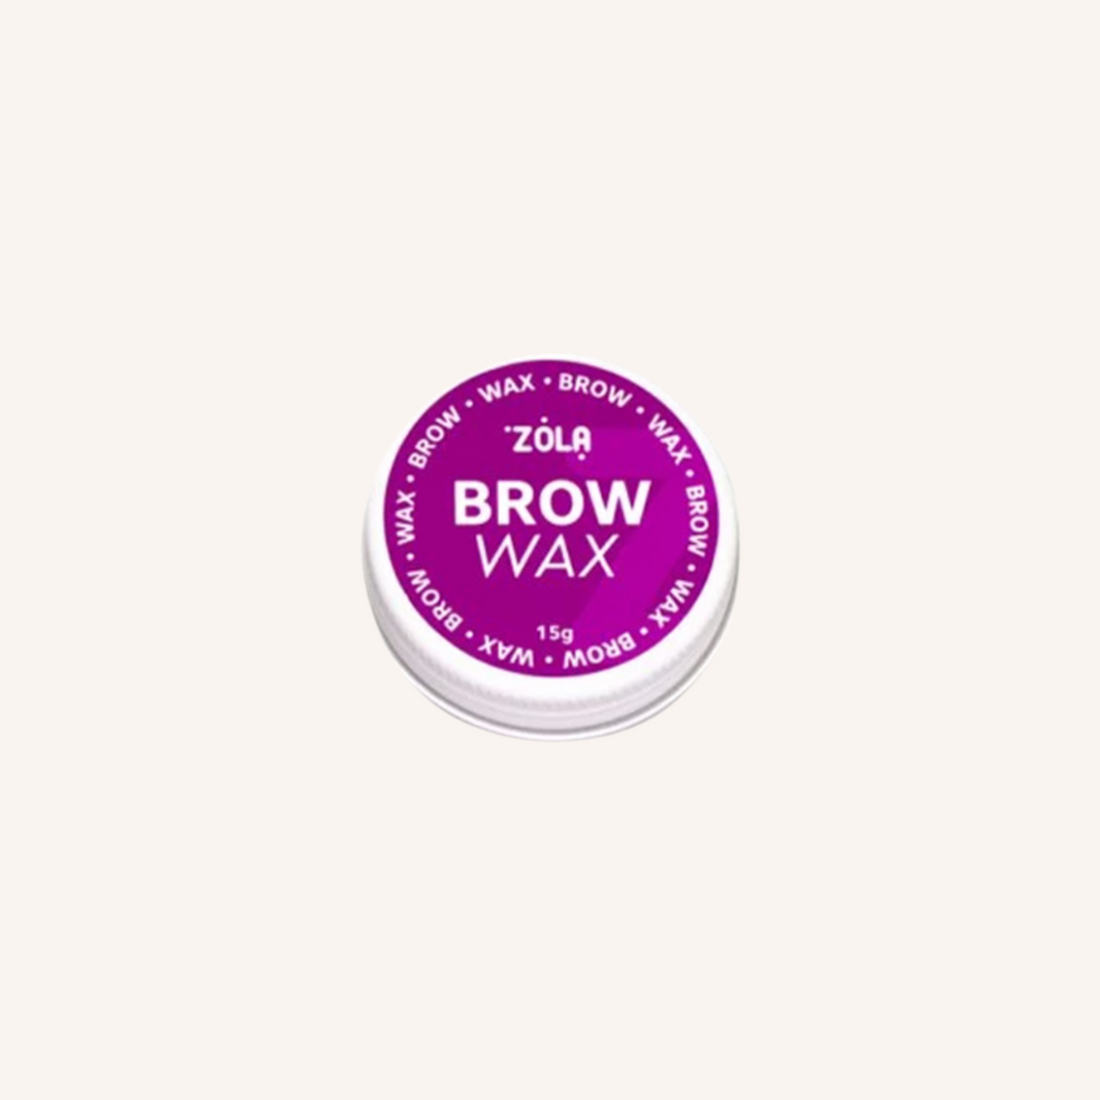 Cire Coiffante Brow Wax Sourcils Zola 15g